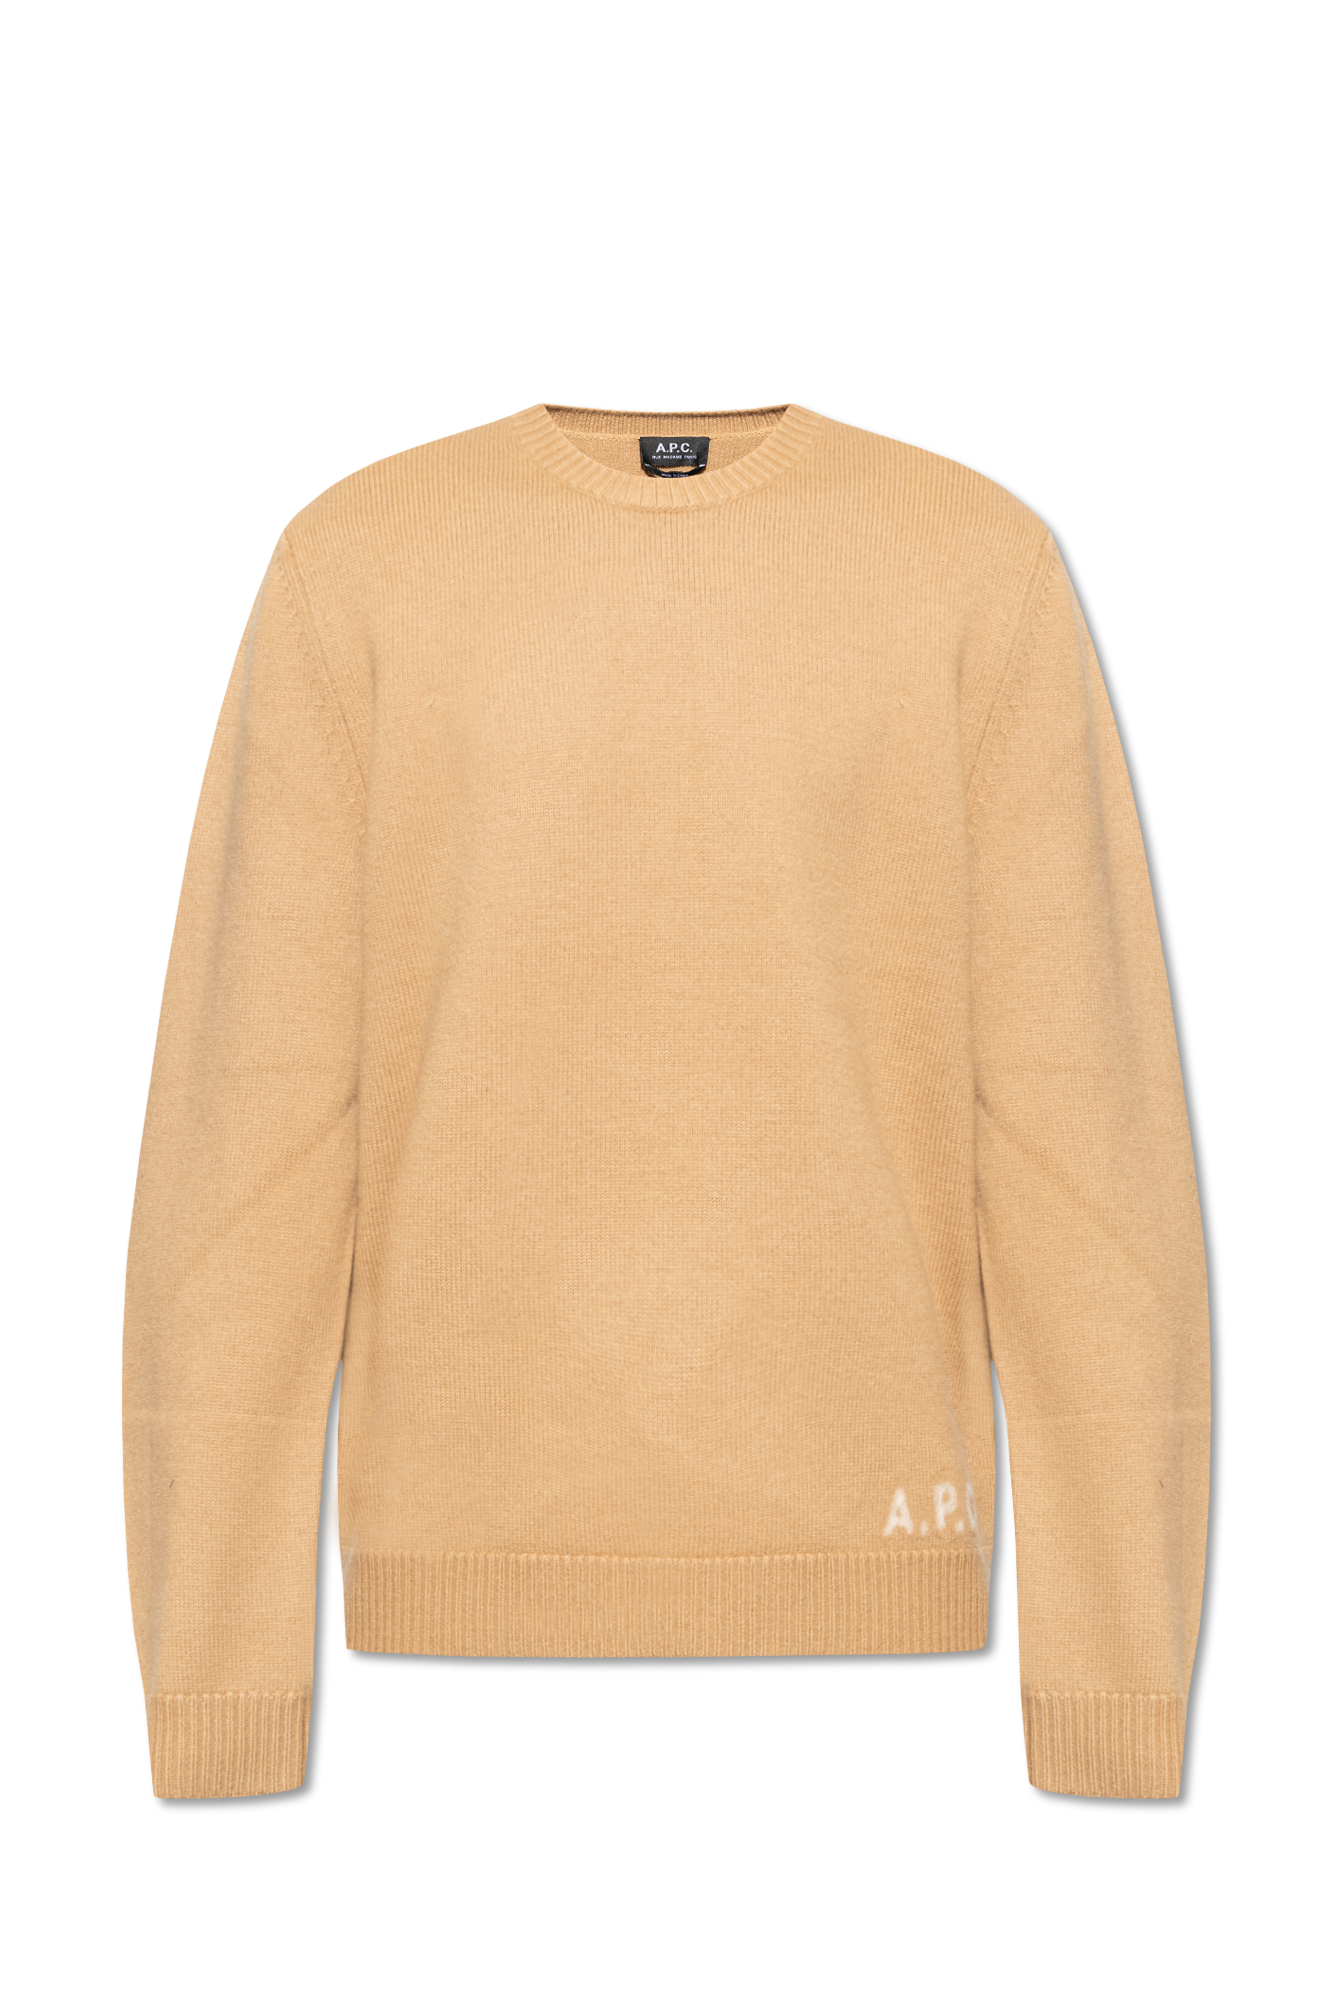 A.P.C. ‘Edward’ sweater